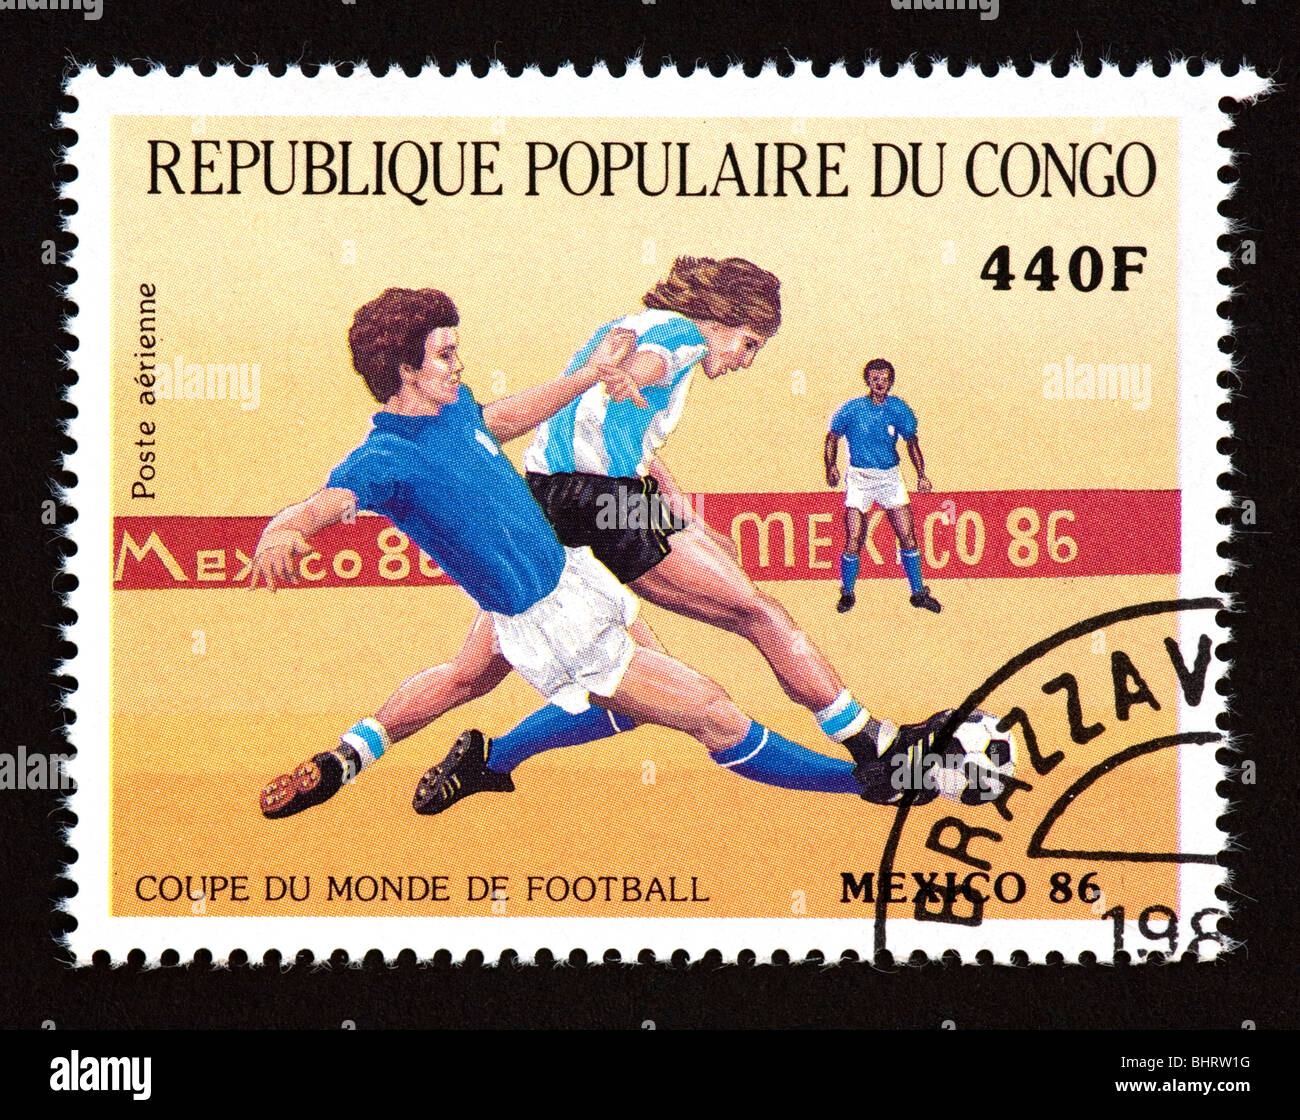 Timbre-poste du Congo République populaire illustrant le soccer, émis pour la Coupe du Monde 1986 à Mexico, Mexique. Banque D'Images